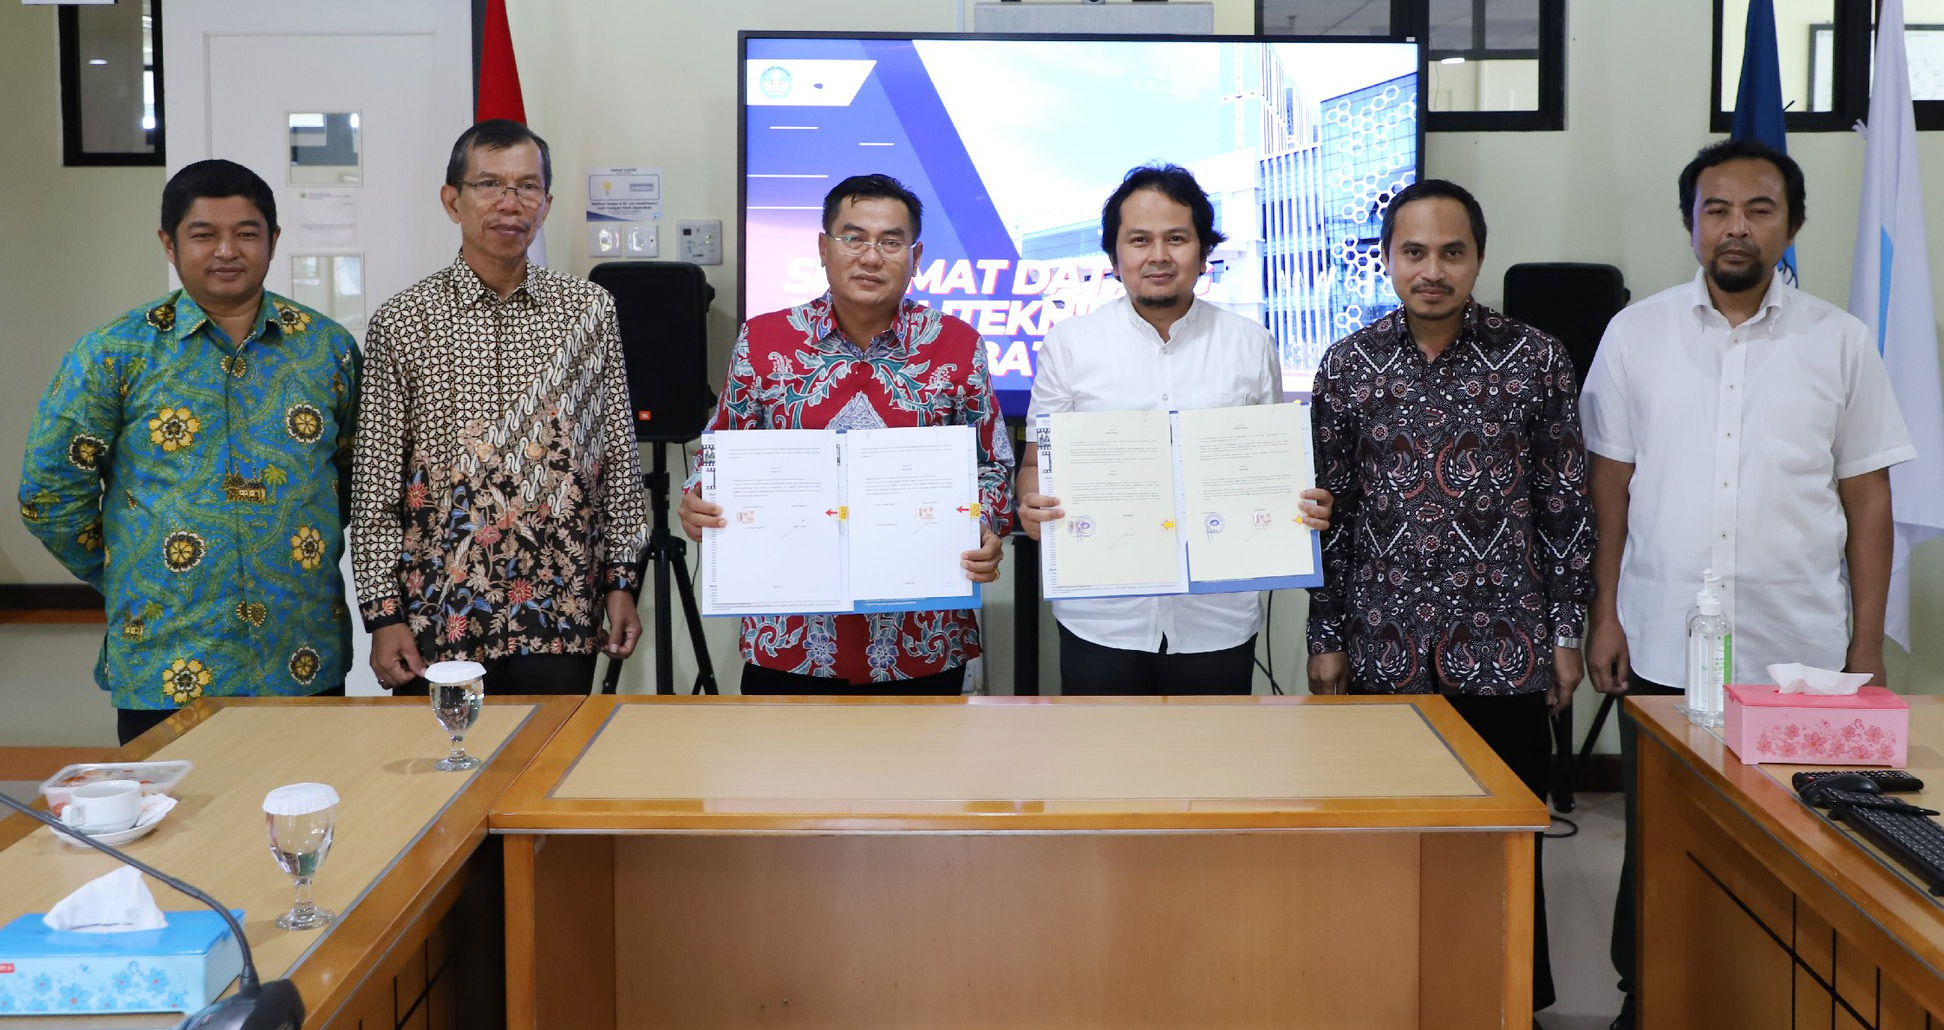 Polibatam Jadi Tujuan Benchmarking Senat dan MoU Politeknik Negeri Padang 